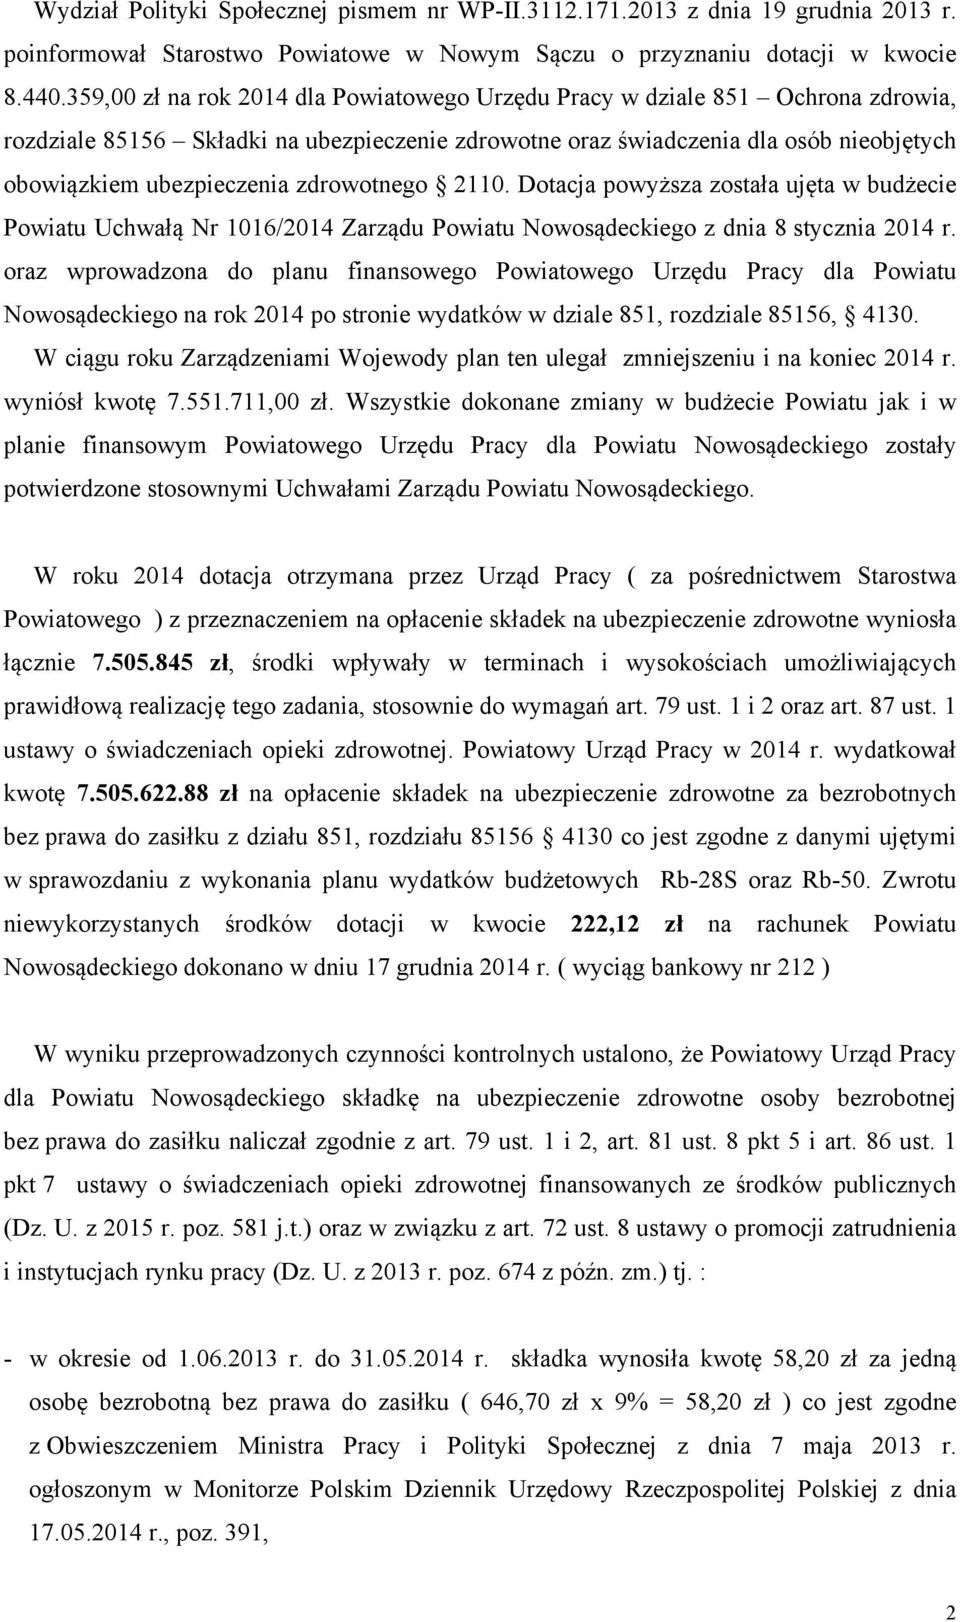 zdrowotnego 2110. Dotacja powyższa została ujęta w budżecie Powiatu Uchwałą Nr 1016/2014 Zarządu Powiatu Nowosądeckiego z dnia 8 stycznia 2014 r.